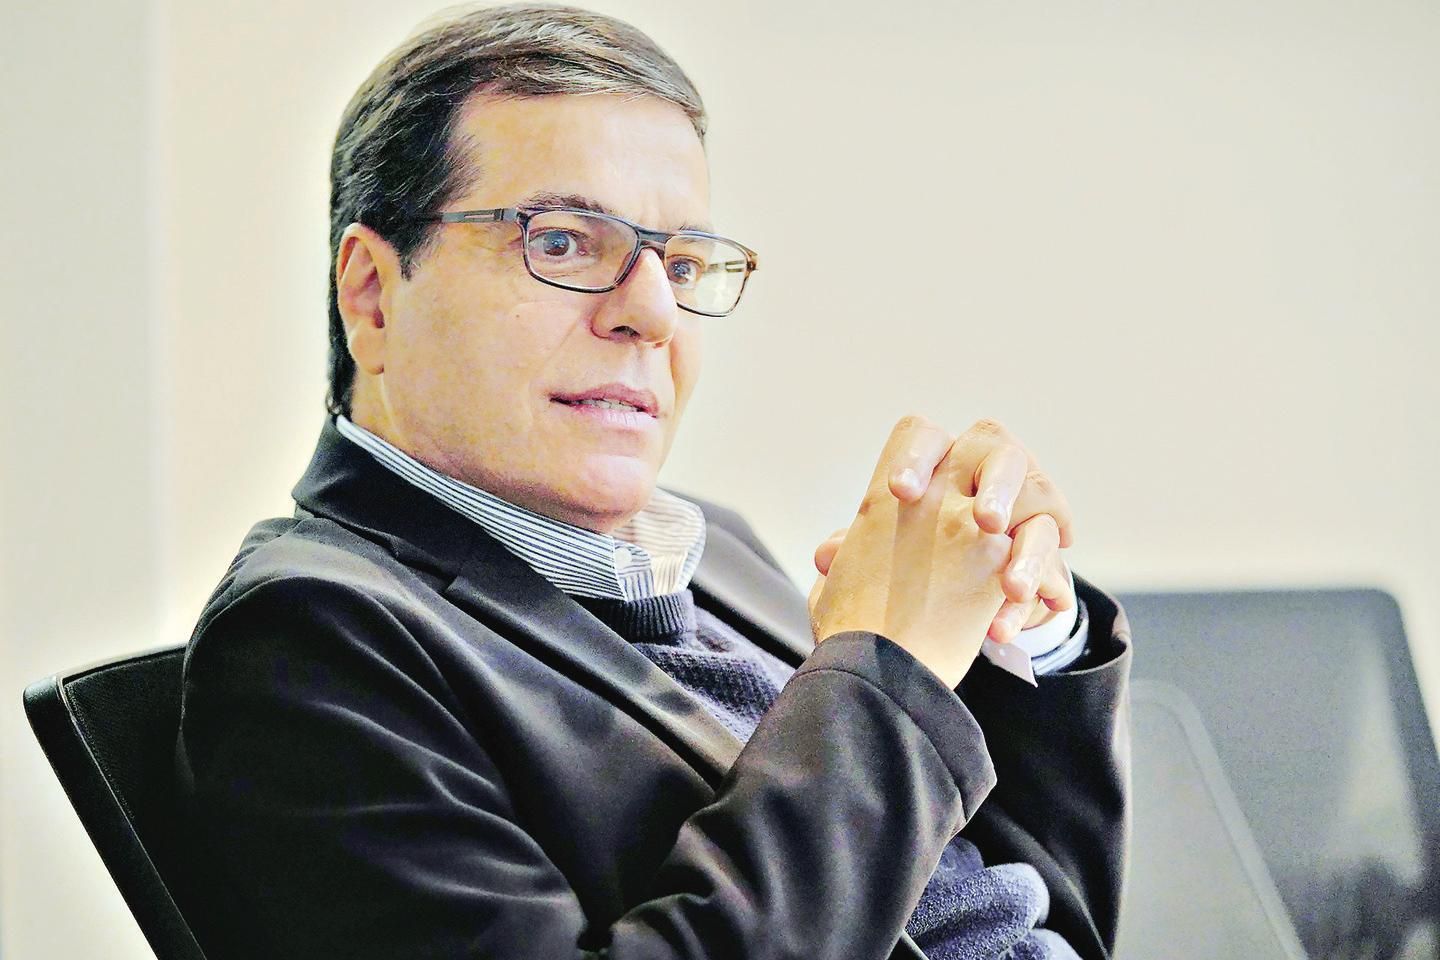 Carlos Lopes - Jornalista, produtor e editor de conteúdo online